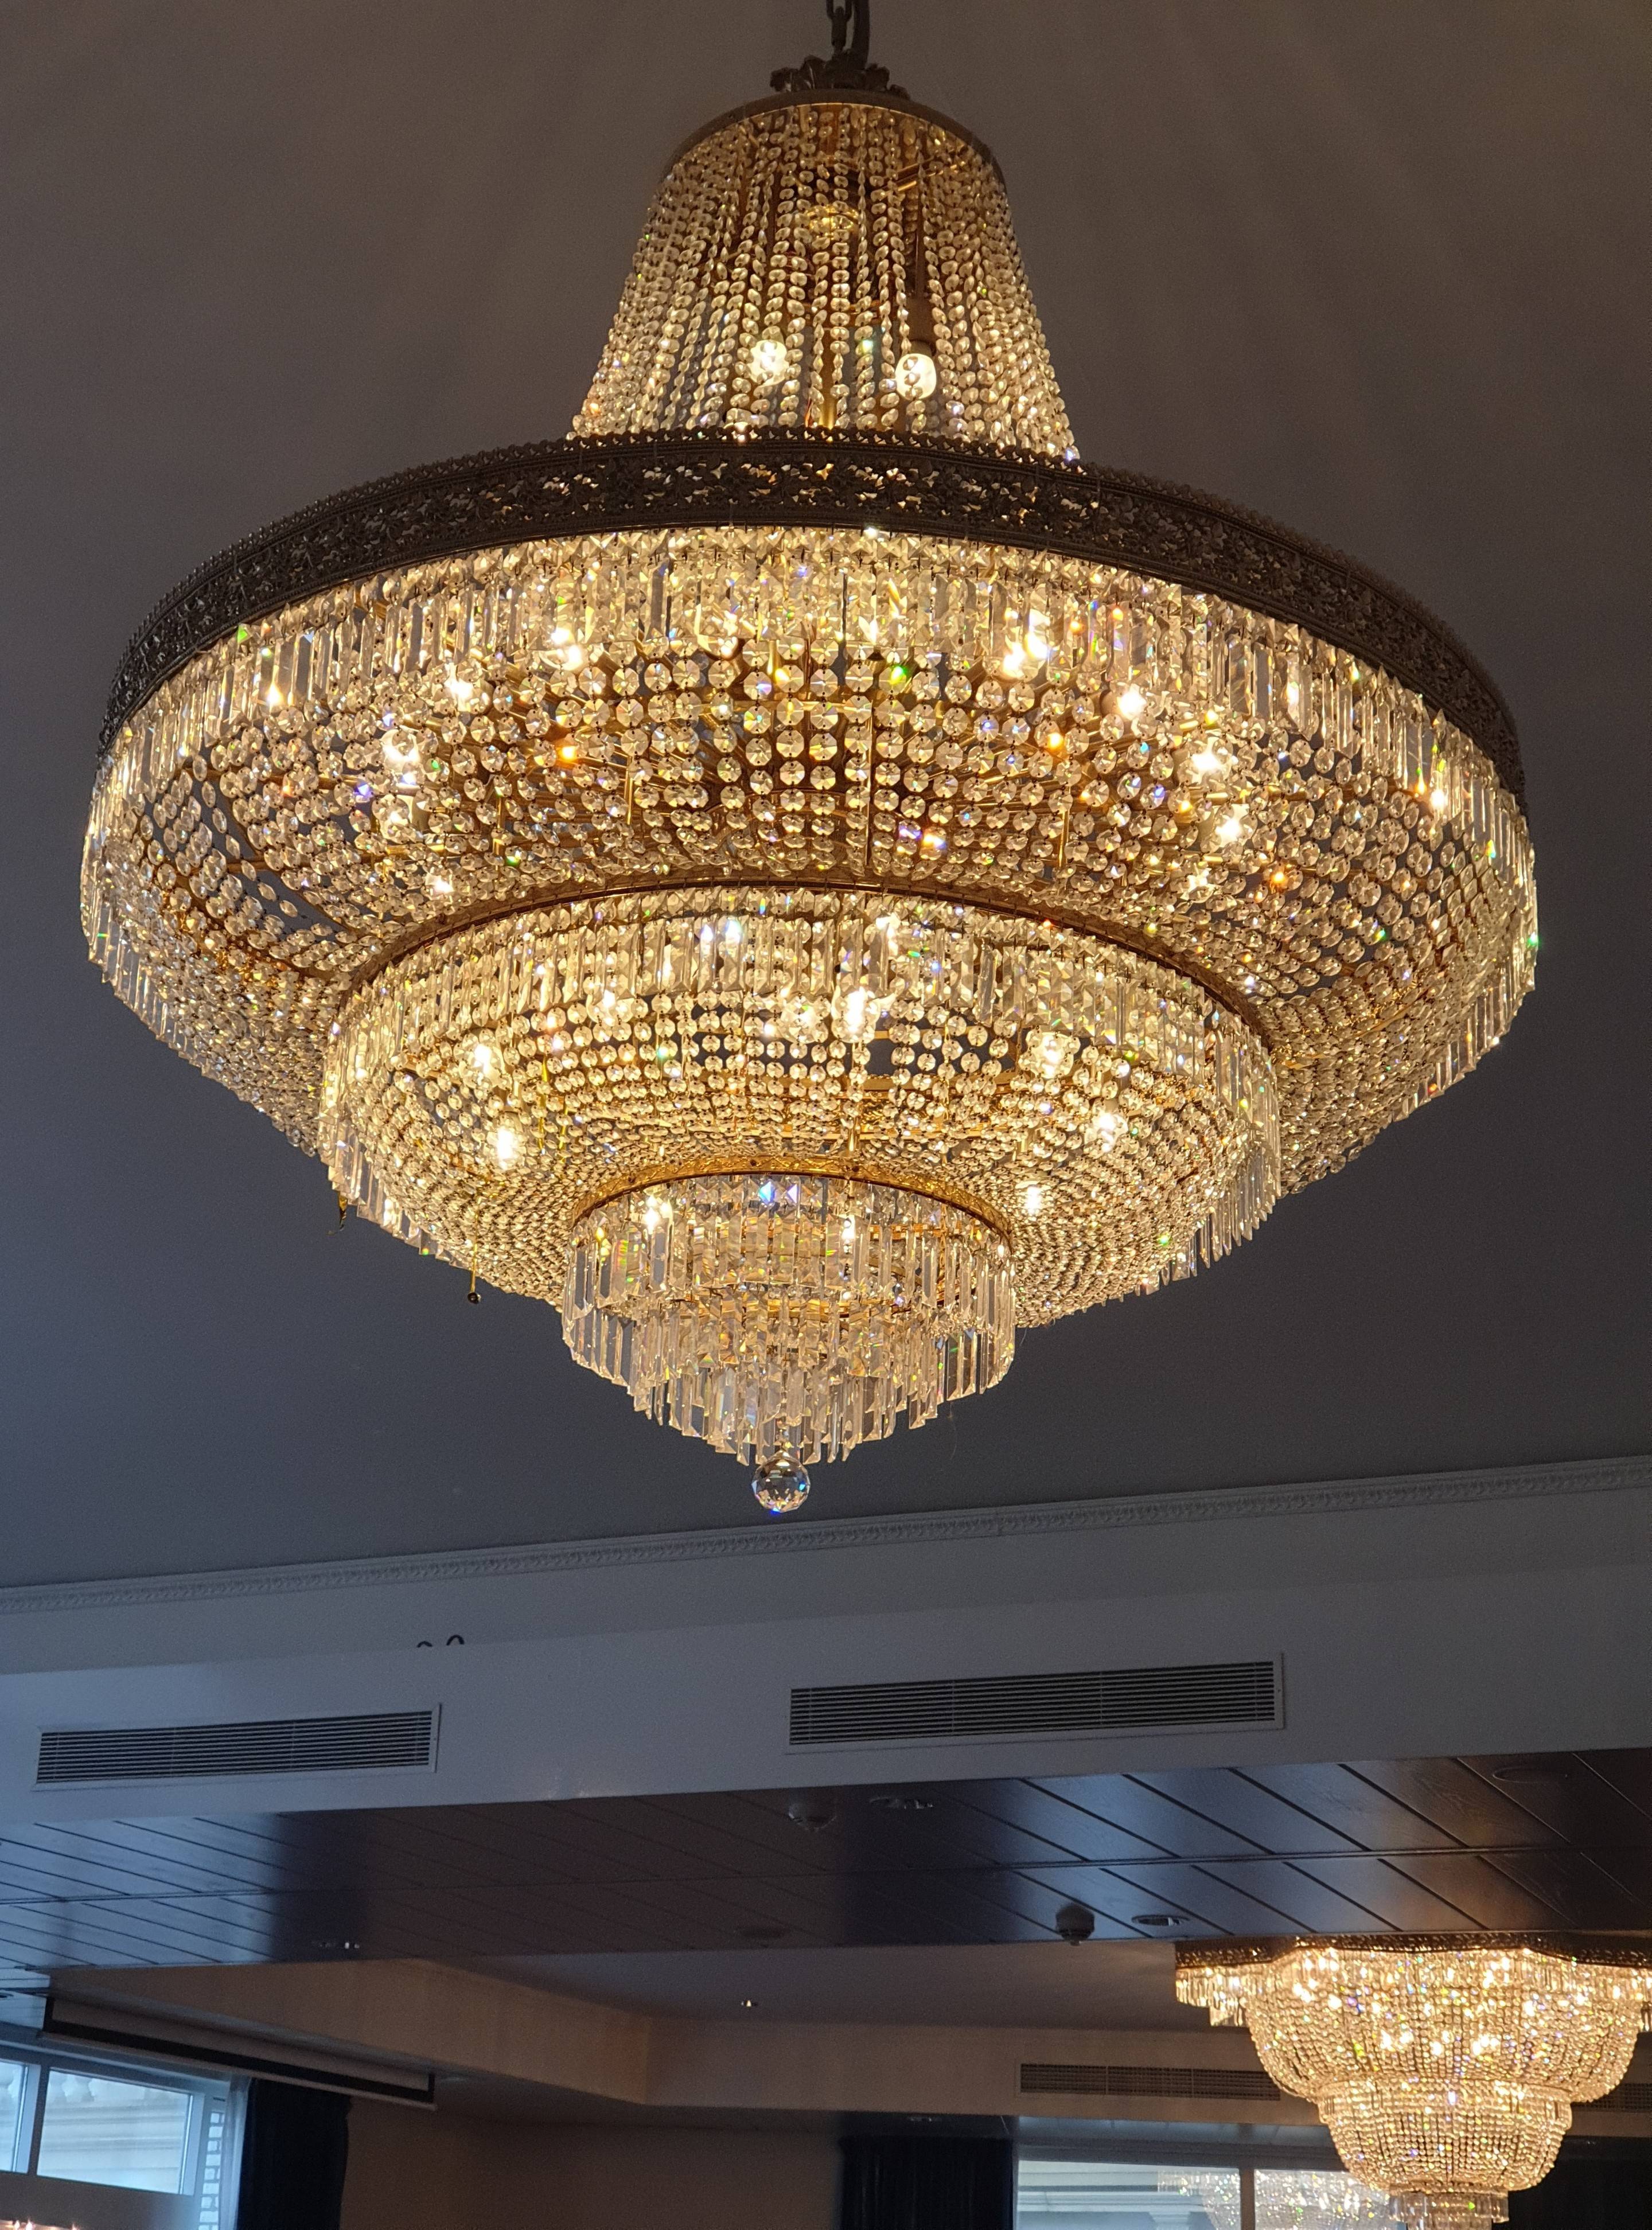 Case: restaureren authentieke verlichting Hotel van Oranje